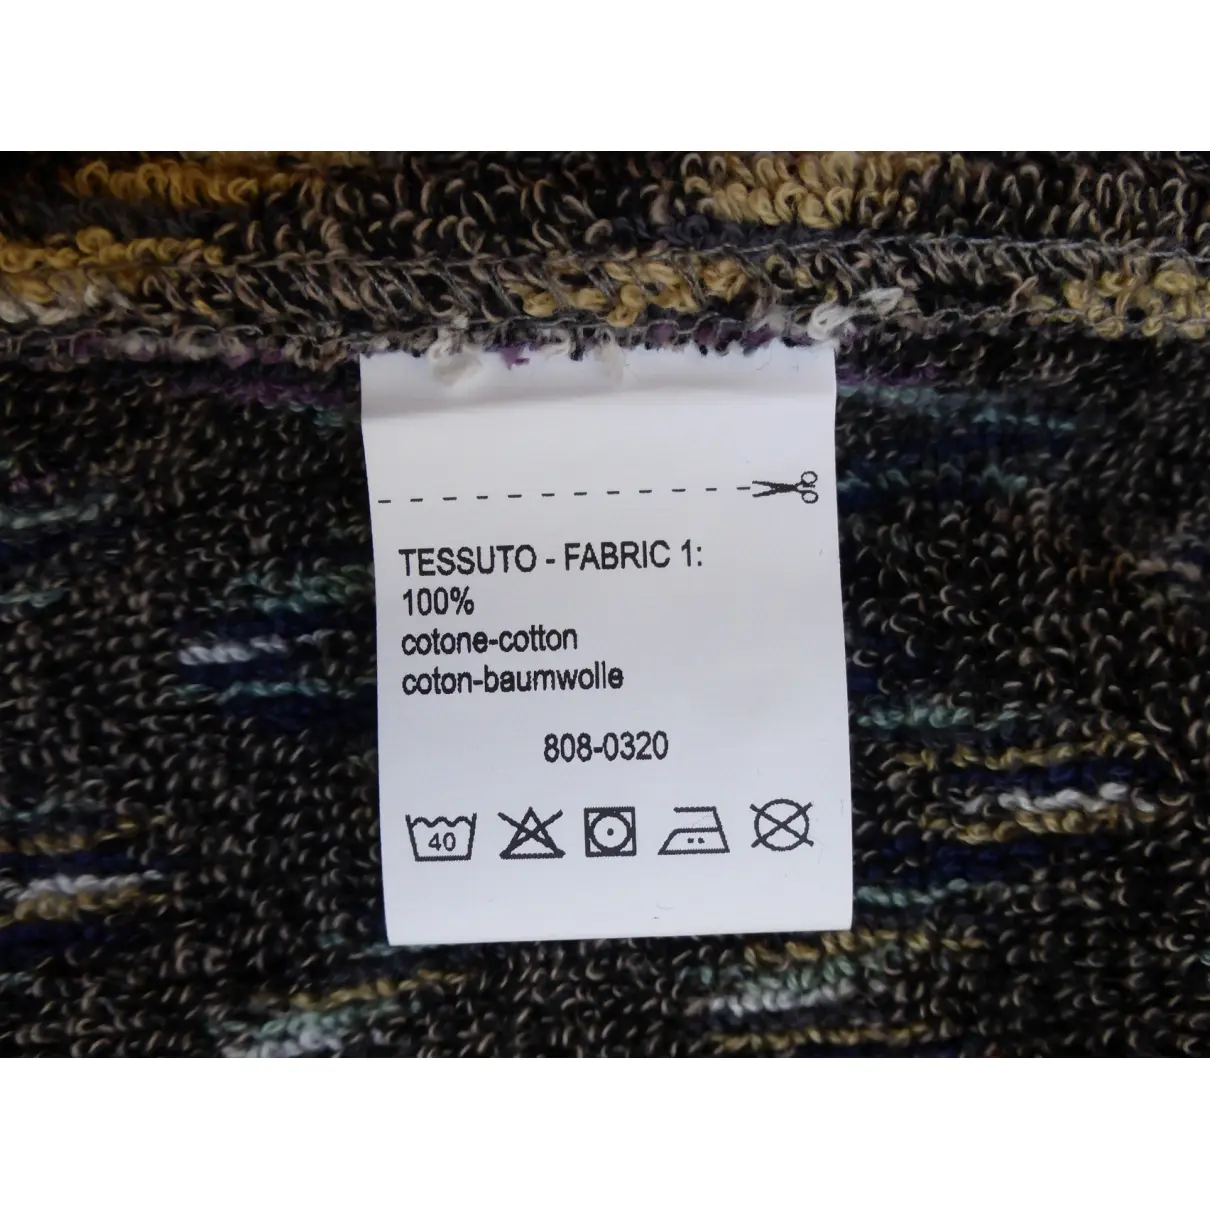 Textiles Missoni